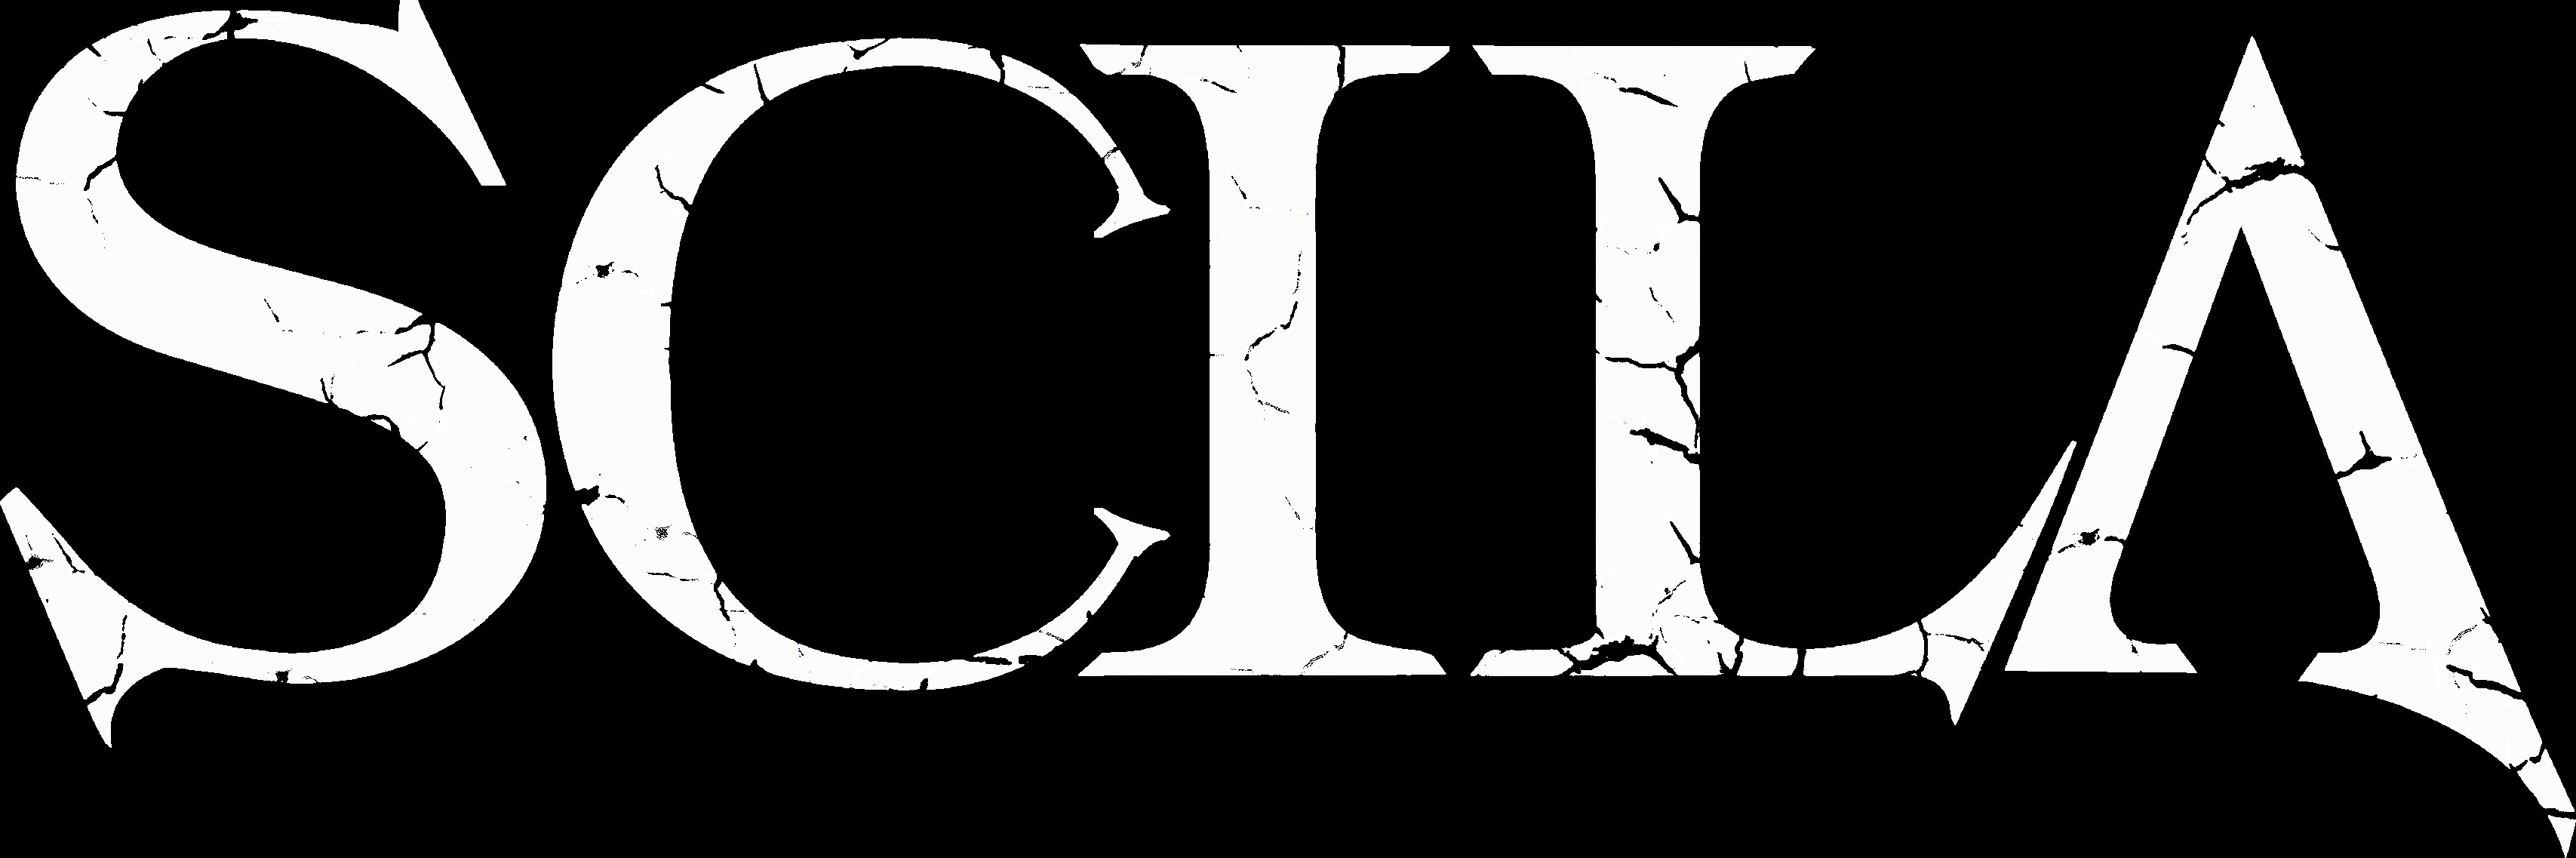 Scila estrenan "Dethroned", su segundo videoclip de su álbum "Colossus".